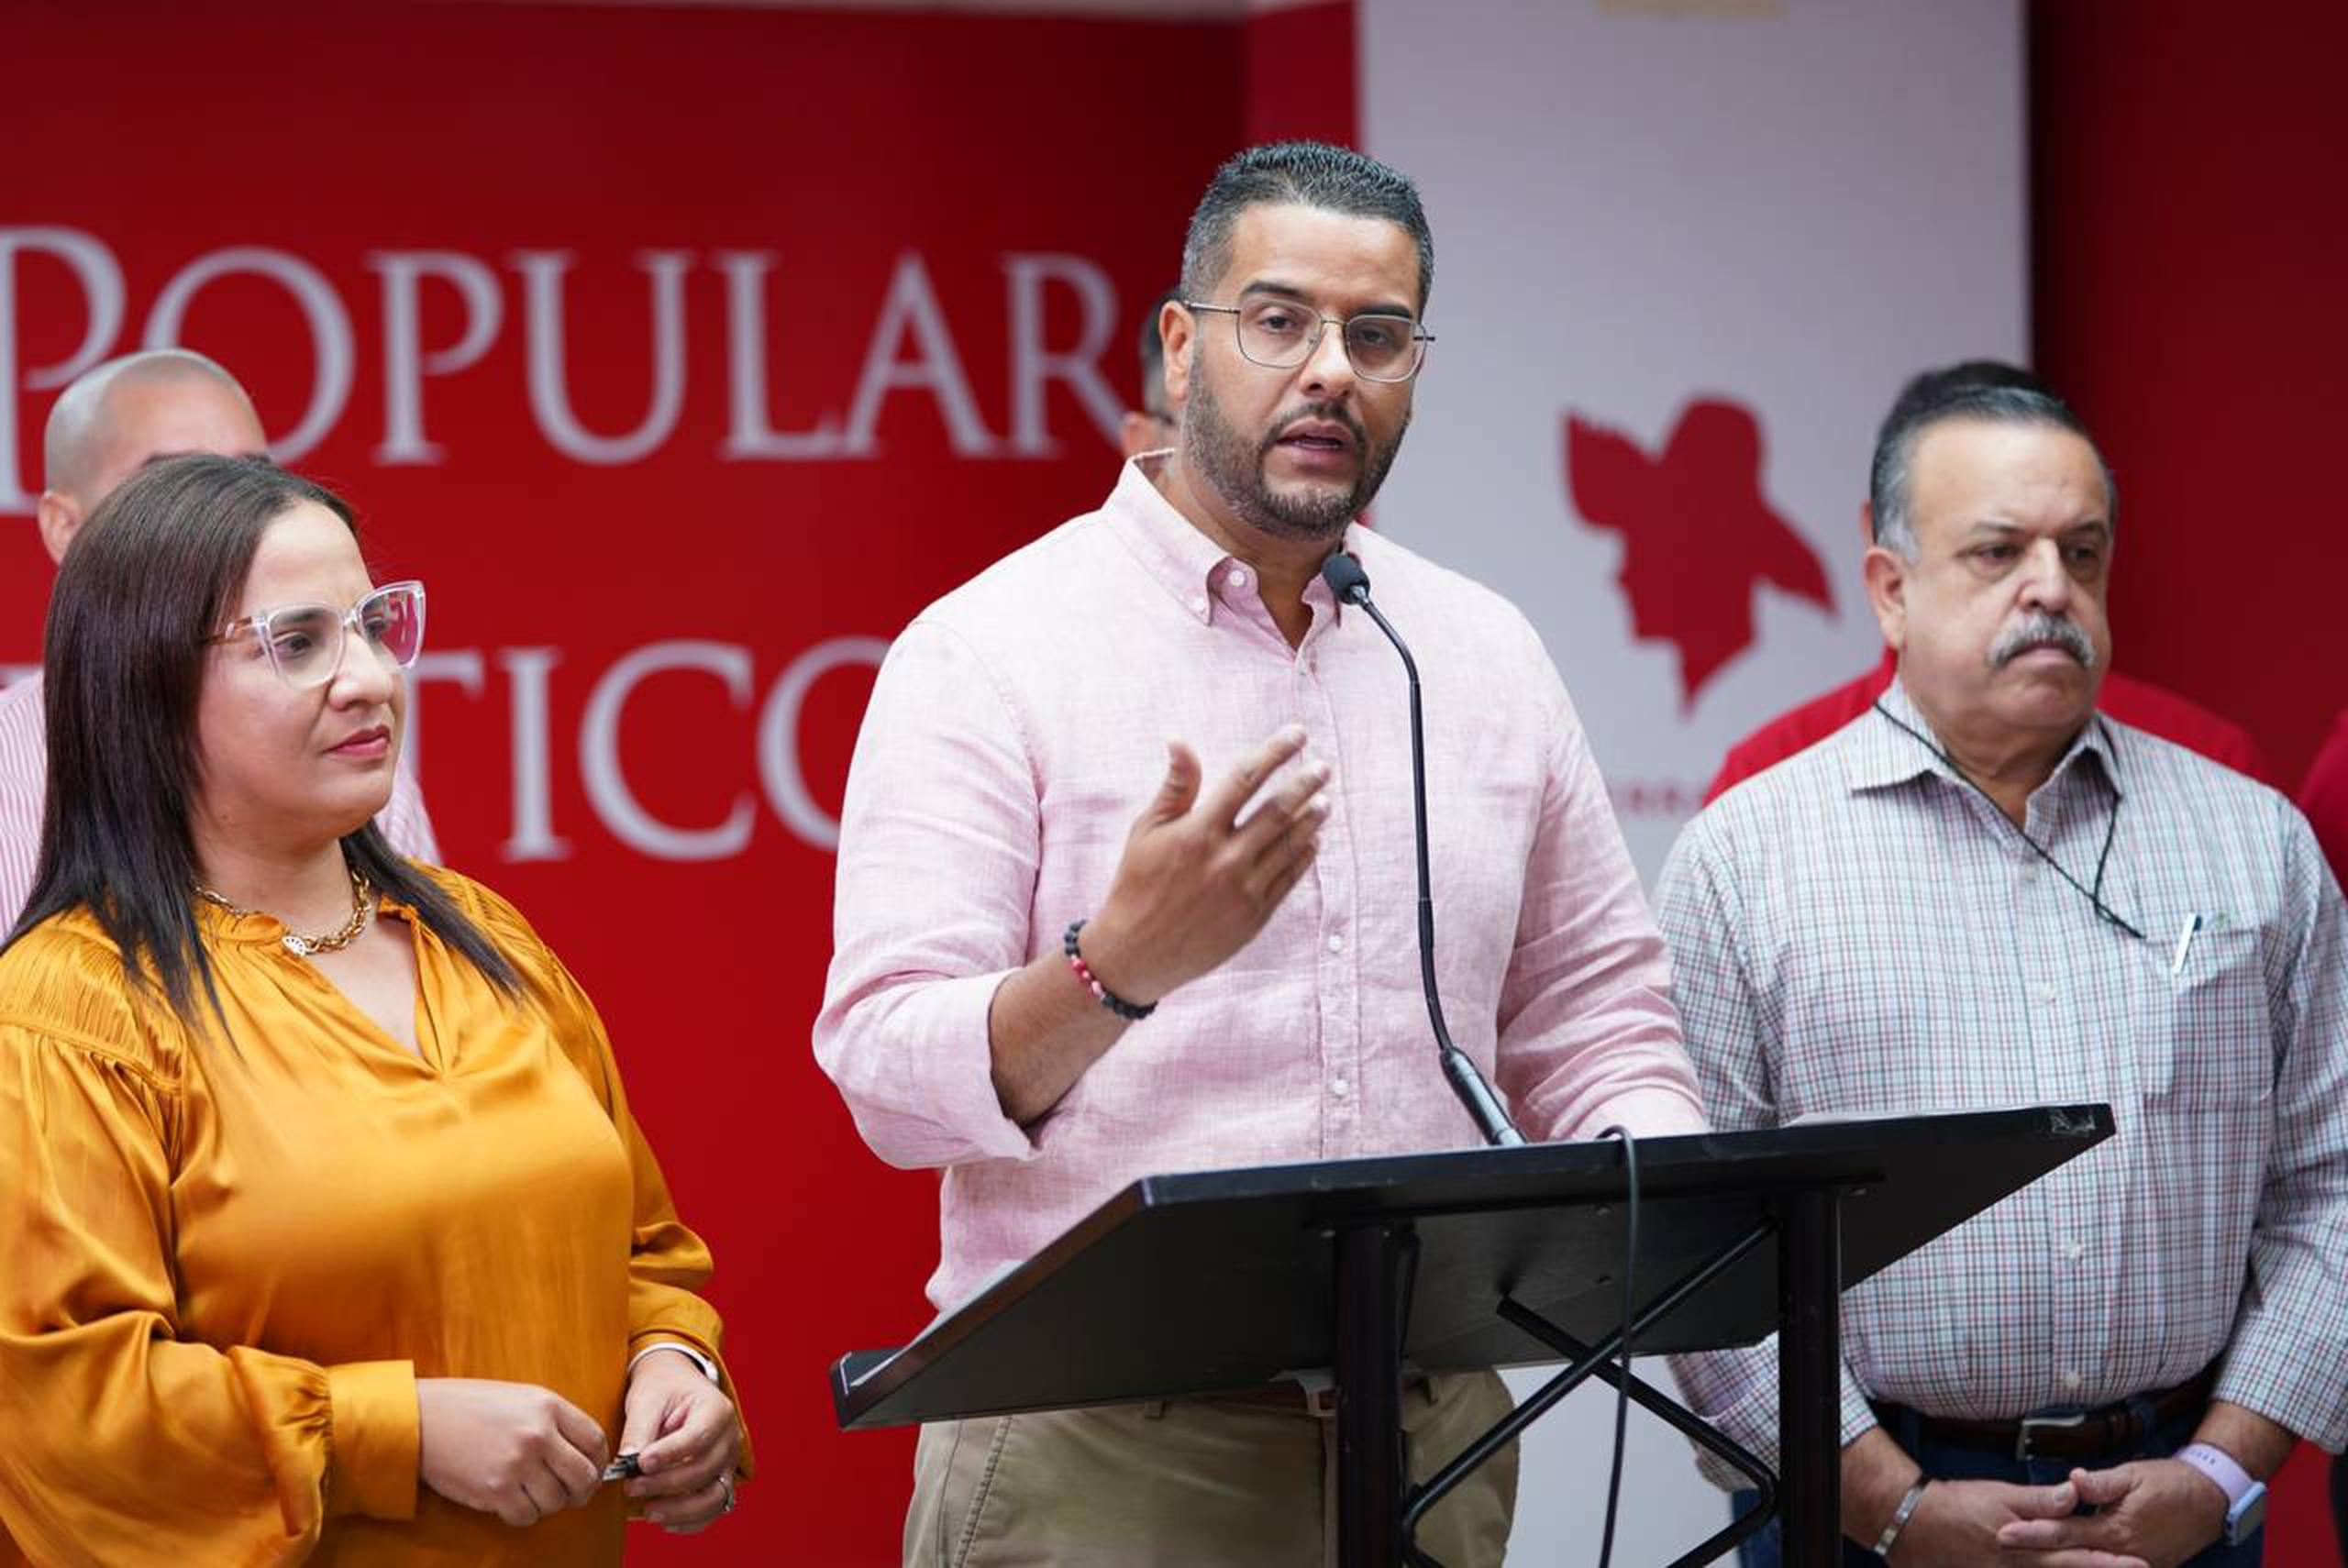 El presidente del Partido Popular Democrático, Jesús Manuel Ortiz, mientras presentaba el programa "Alerta Roja" para capacitar al equipo electoral.